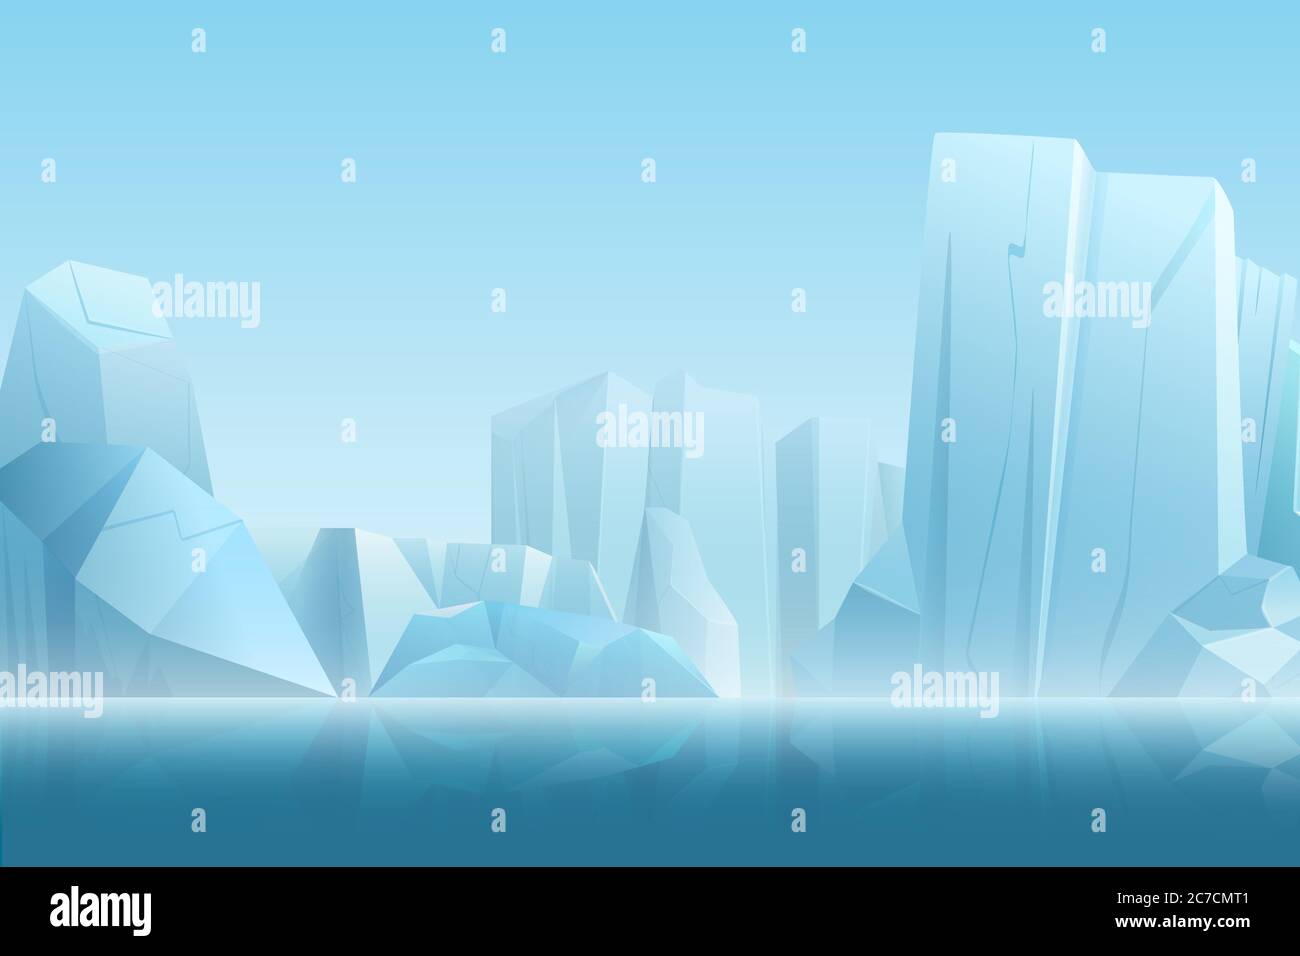 Paesaggio artico invernale con iceberg in blu scuro acqua pura e neve montagne colline in morbido bianco nebbia illustrazione vettoriale Illustrazione Vettoriale